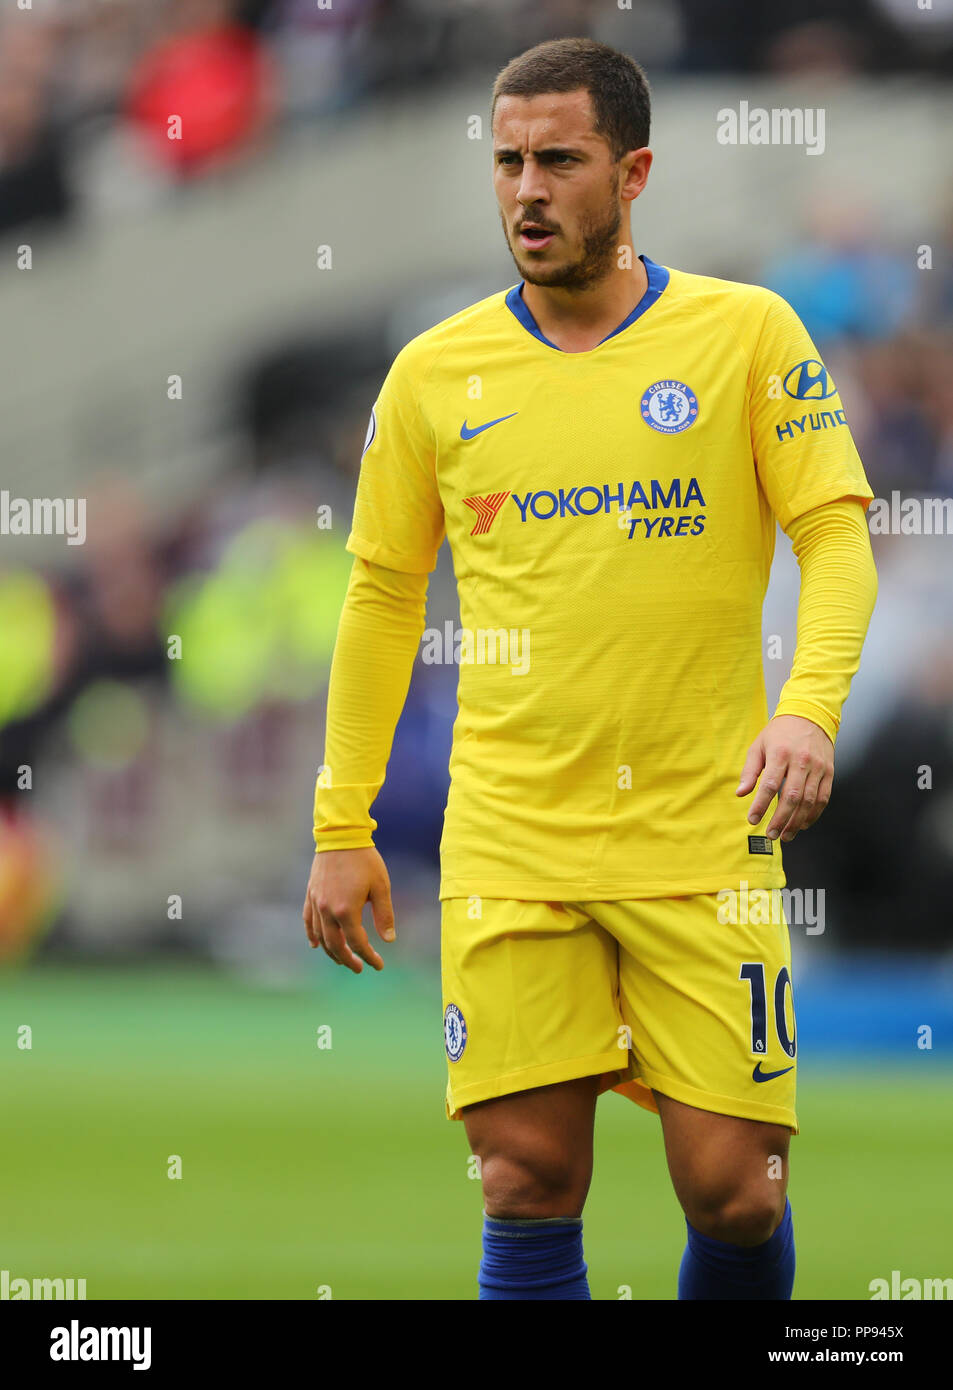 Eden Hazard de Chelsea - West Ham United v Chelsea, Premier League, stade de Londres, Londres (Stratford) - 23 septembre 2018 Banque D'Images